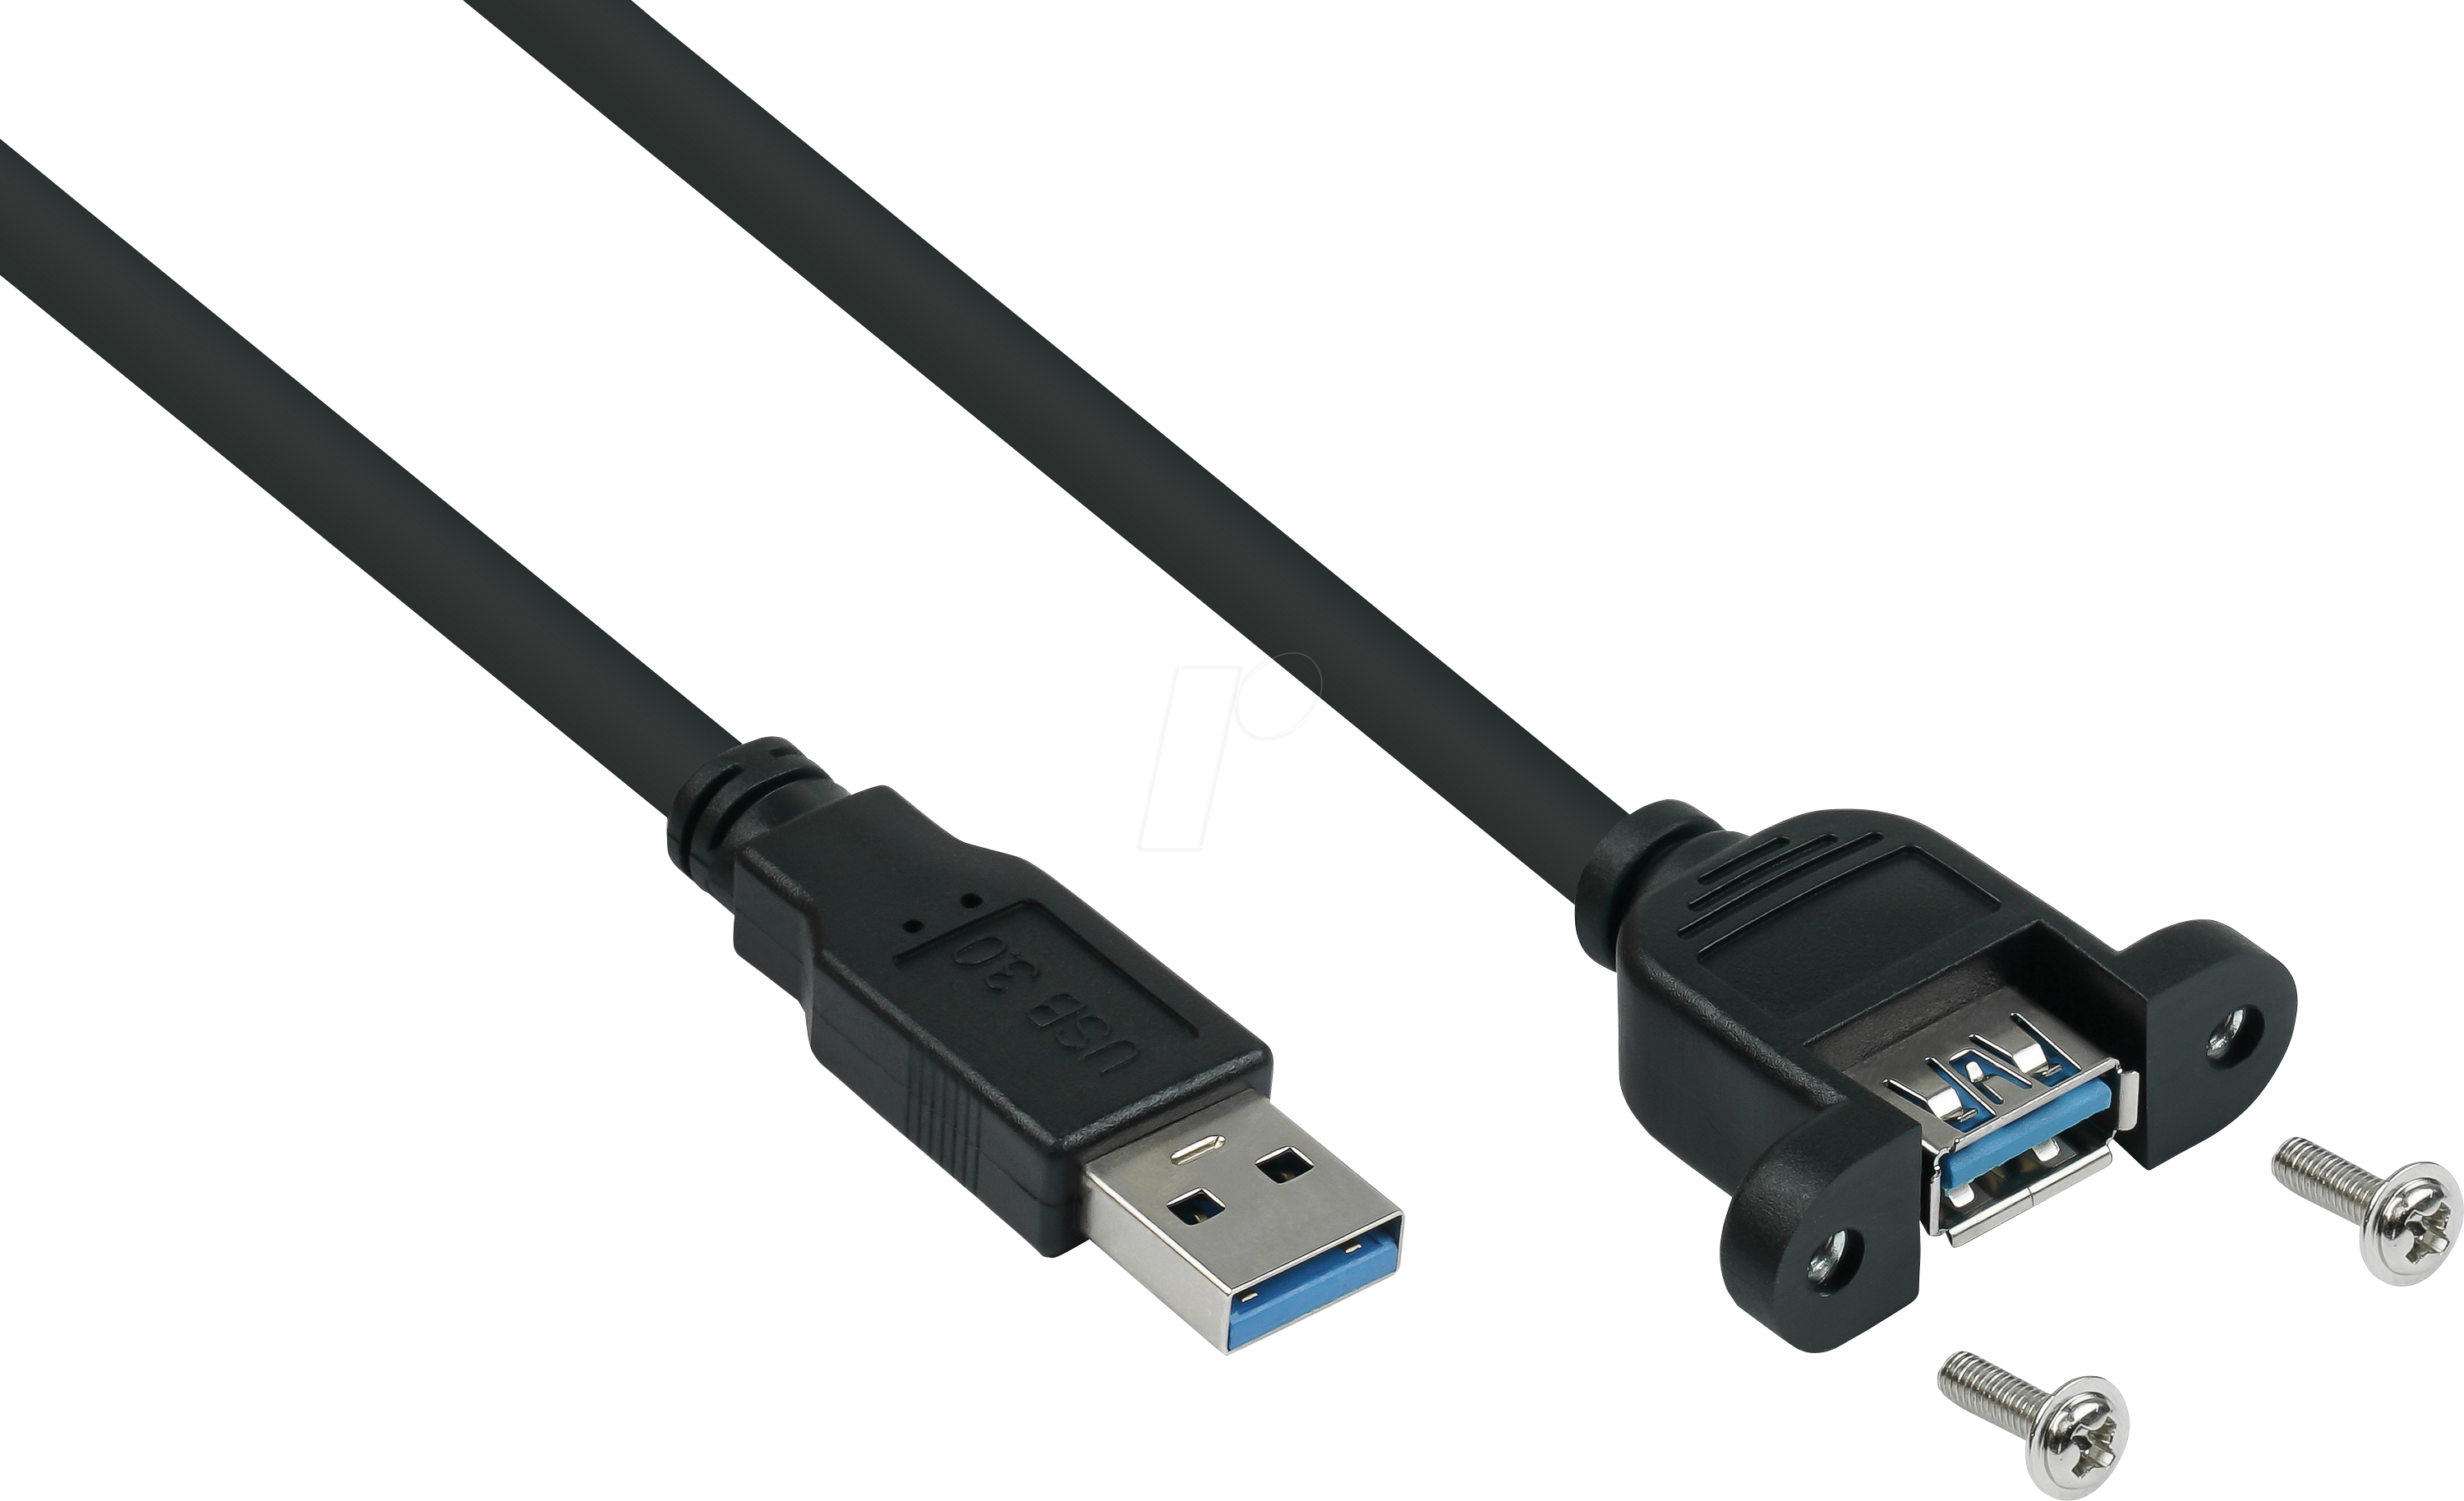 USB Kabel von 12V Dose Mittelkonsole nach vorne verlegen - Model 3